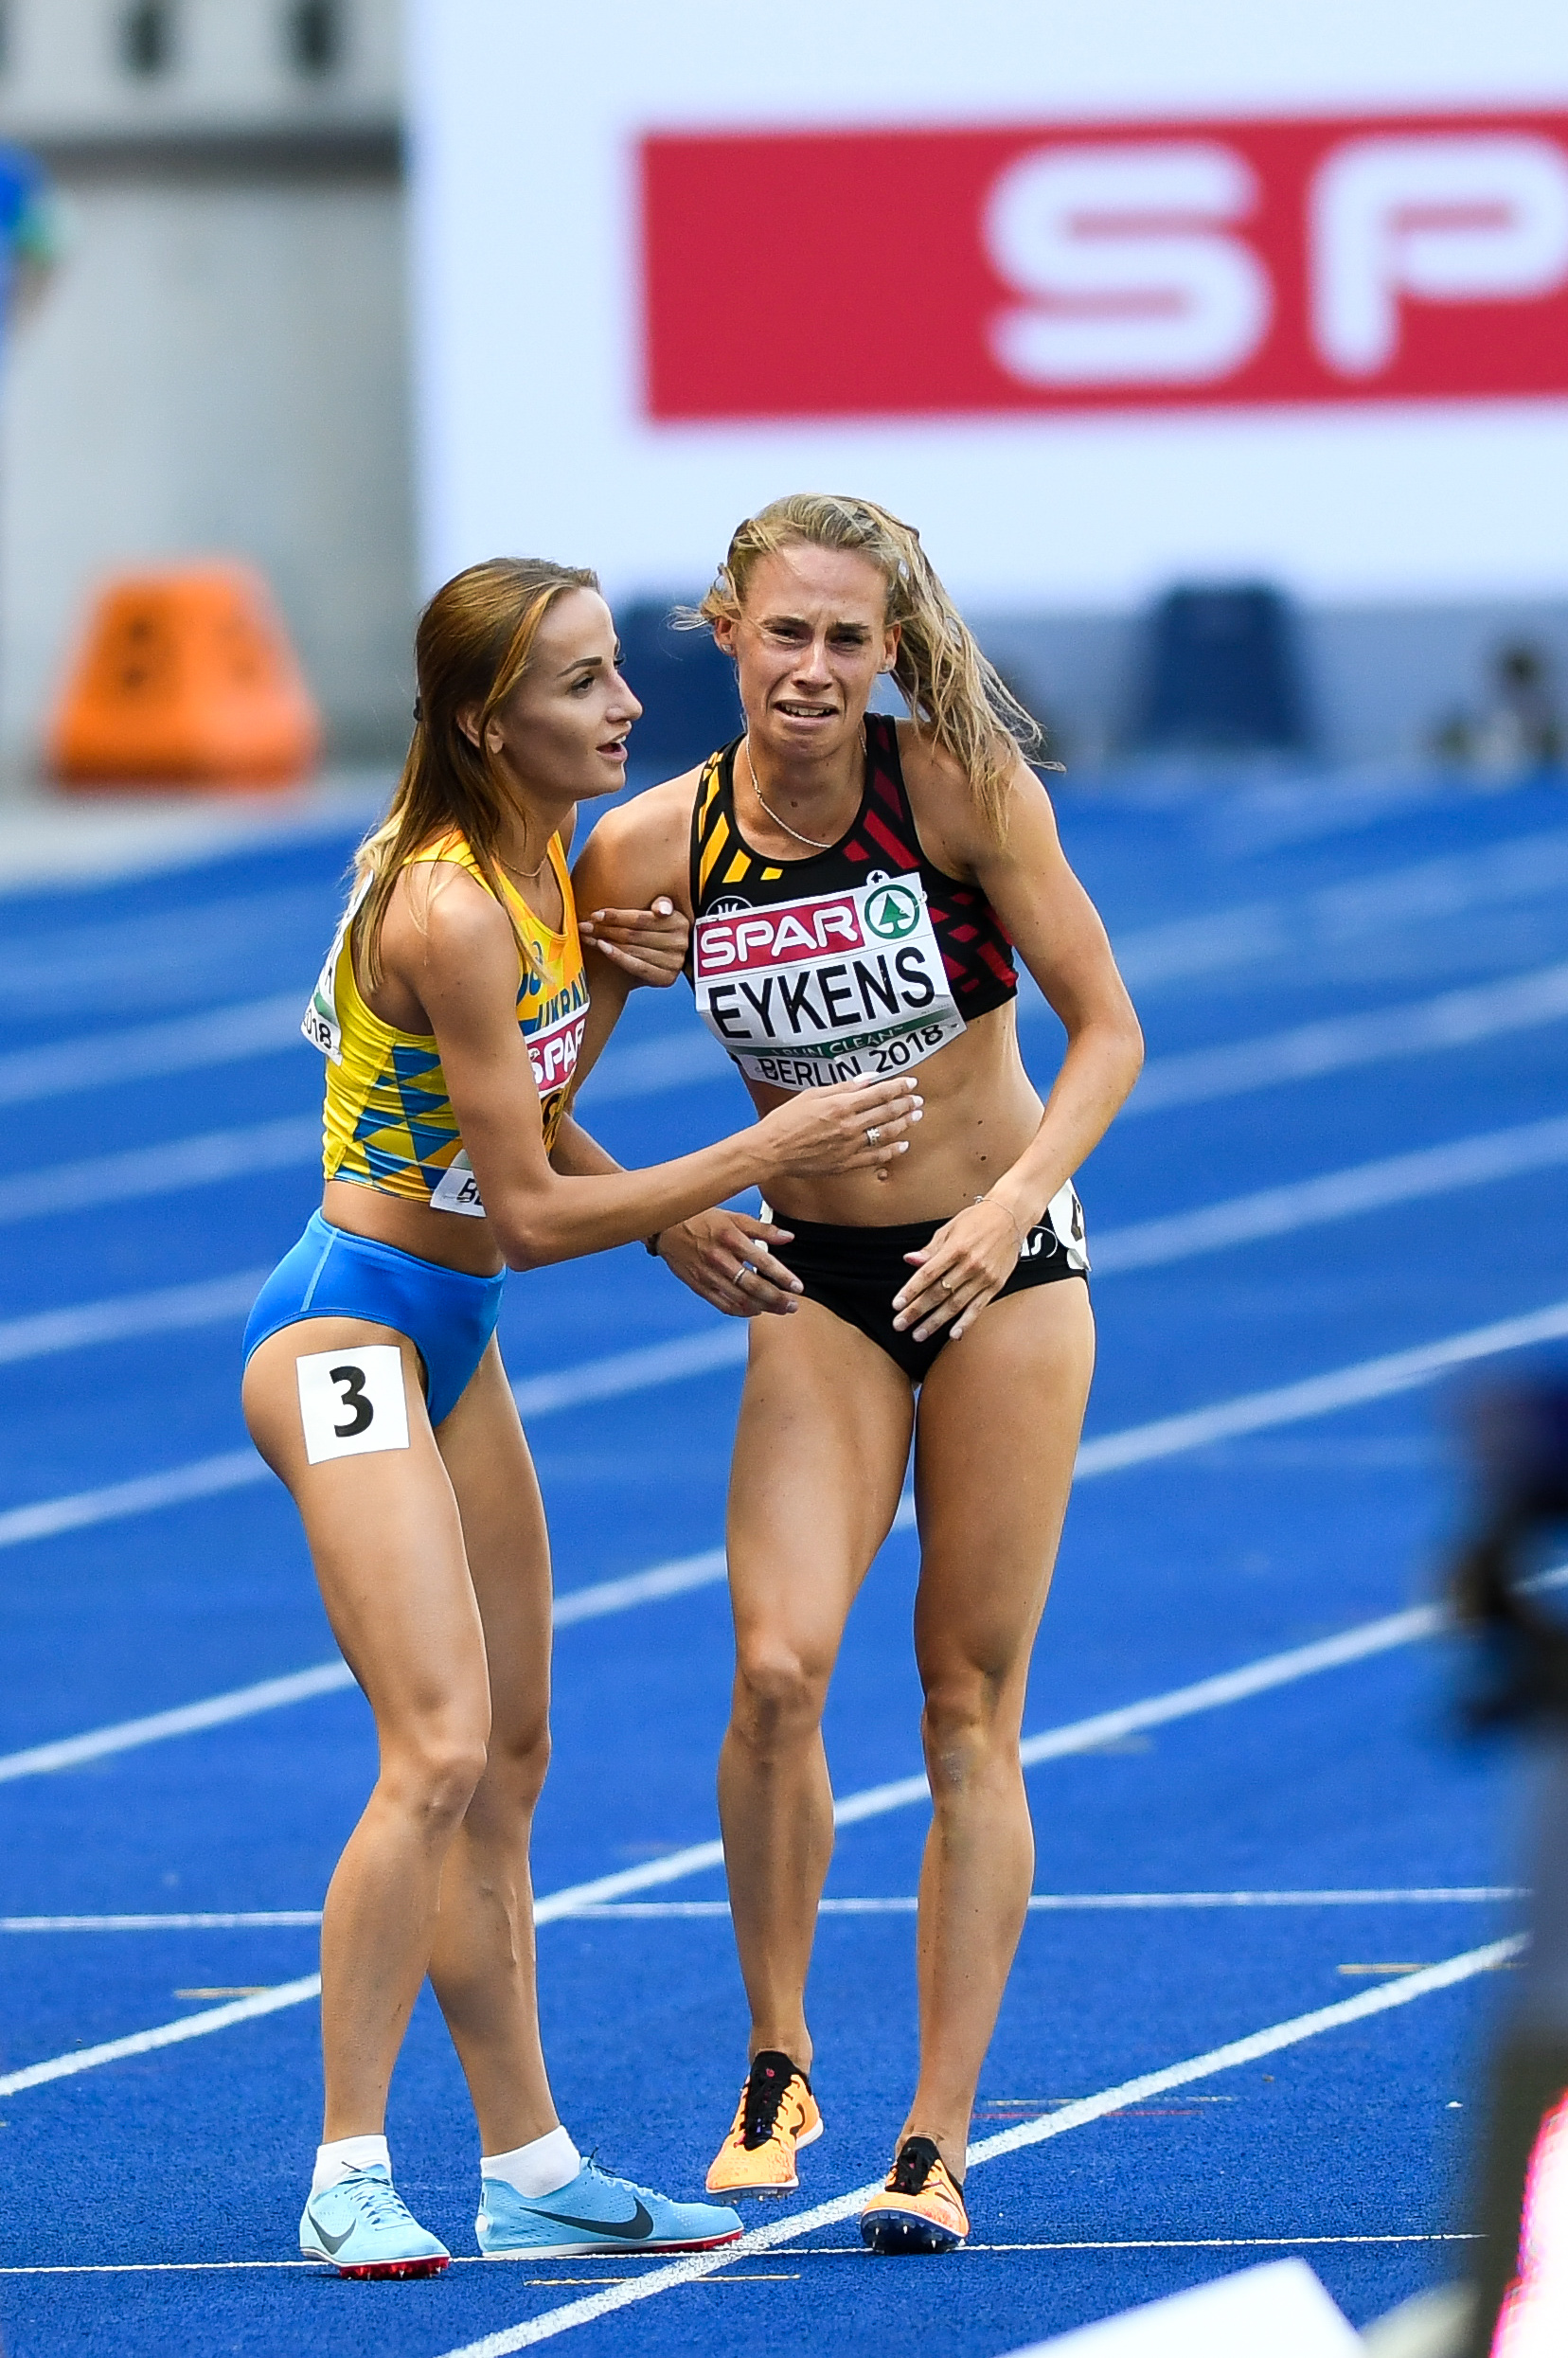 Renee Eykens 800m Berlijn 2018